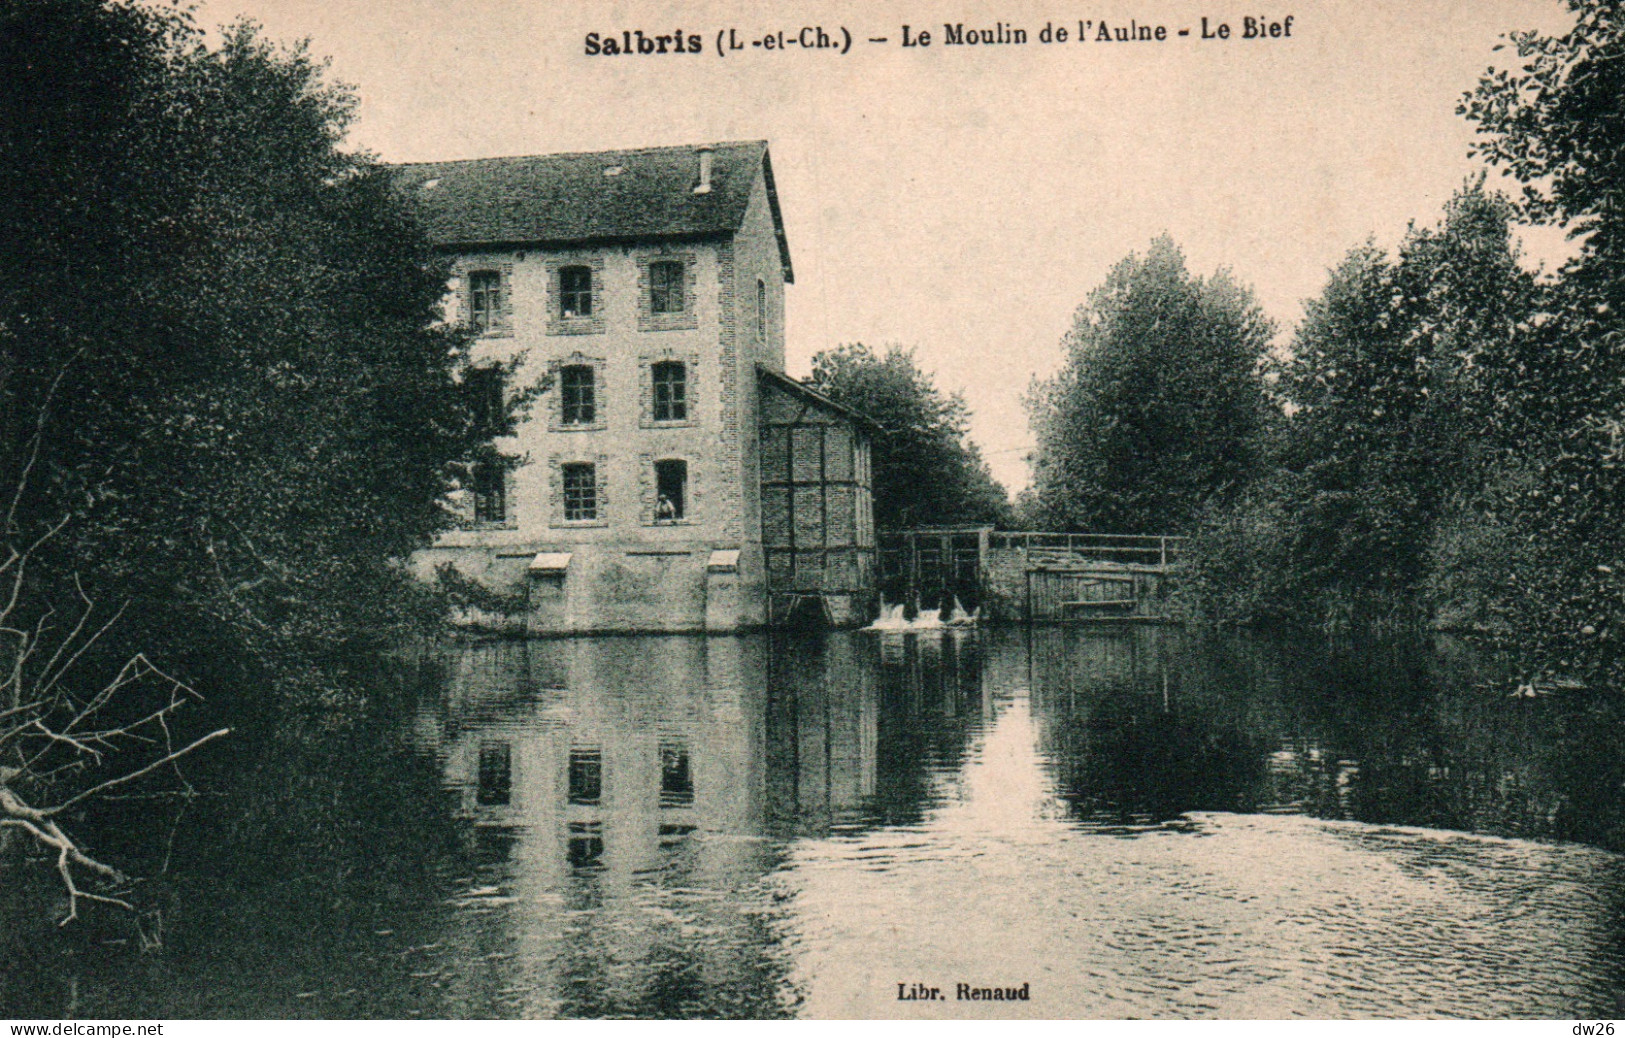 Moulins à Eau - Salbris (Loir-et-Cher) Le Moulin De L'Aulne, Le Bief - Librairie Renaud - Carte Non Circulée - Molinos De Agua